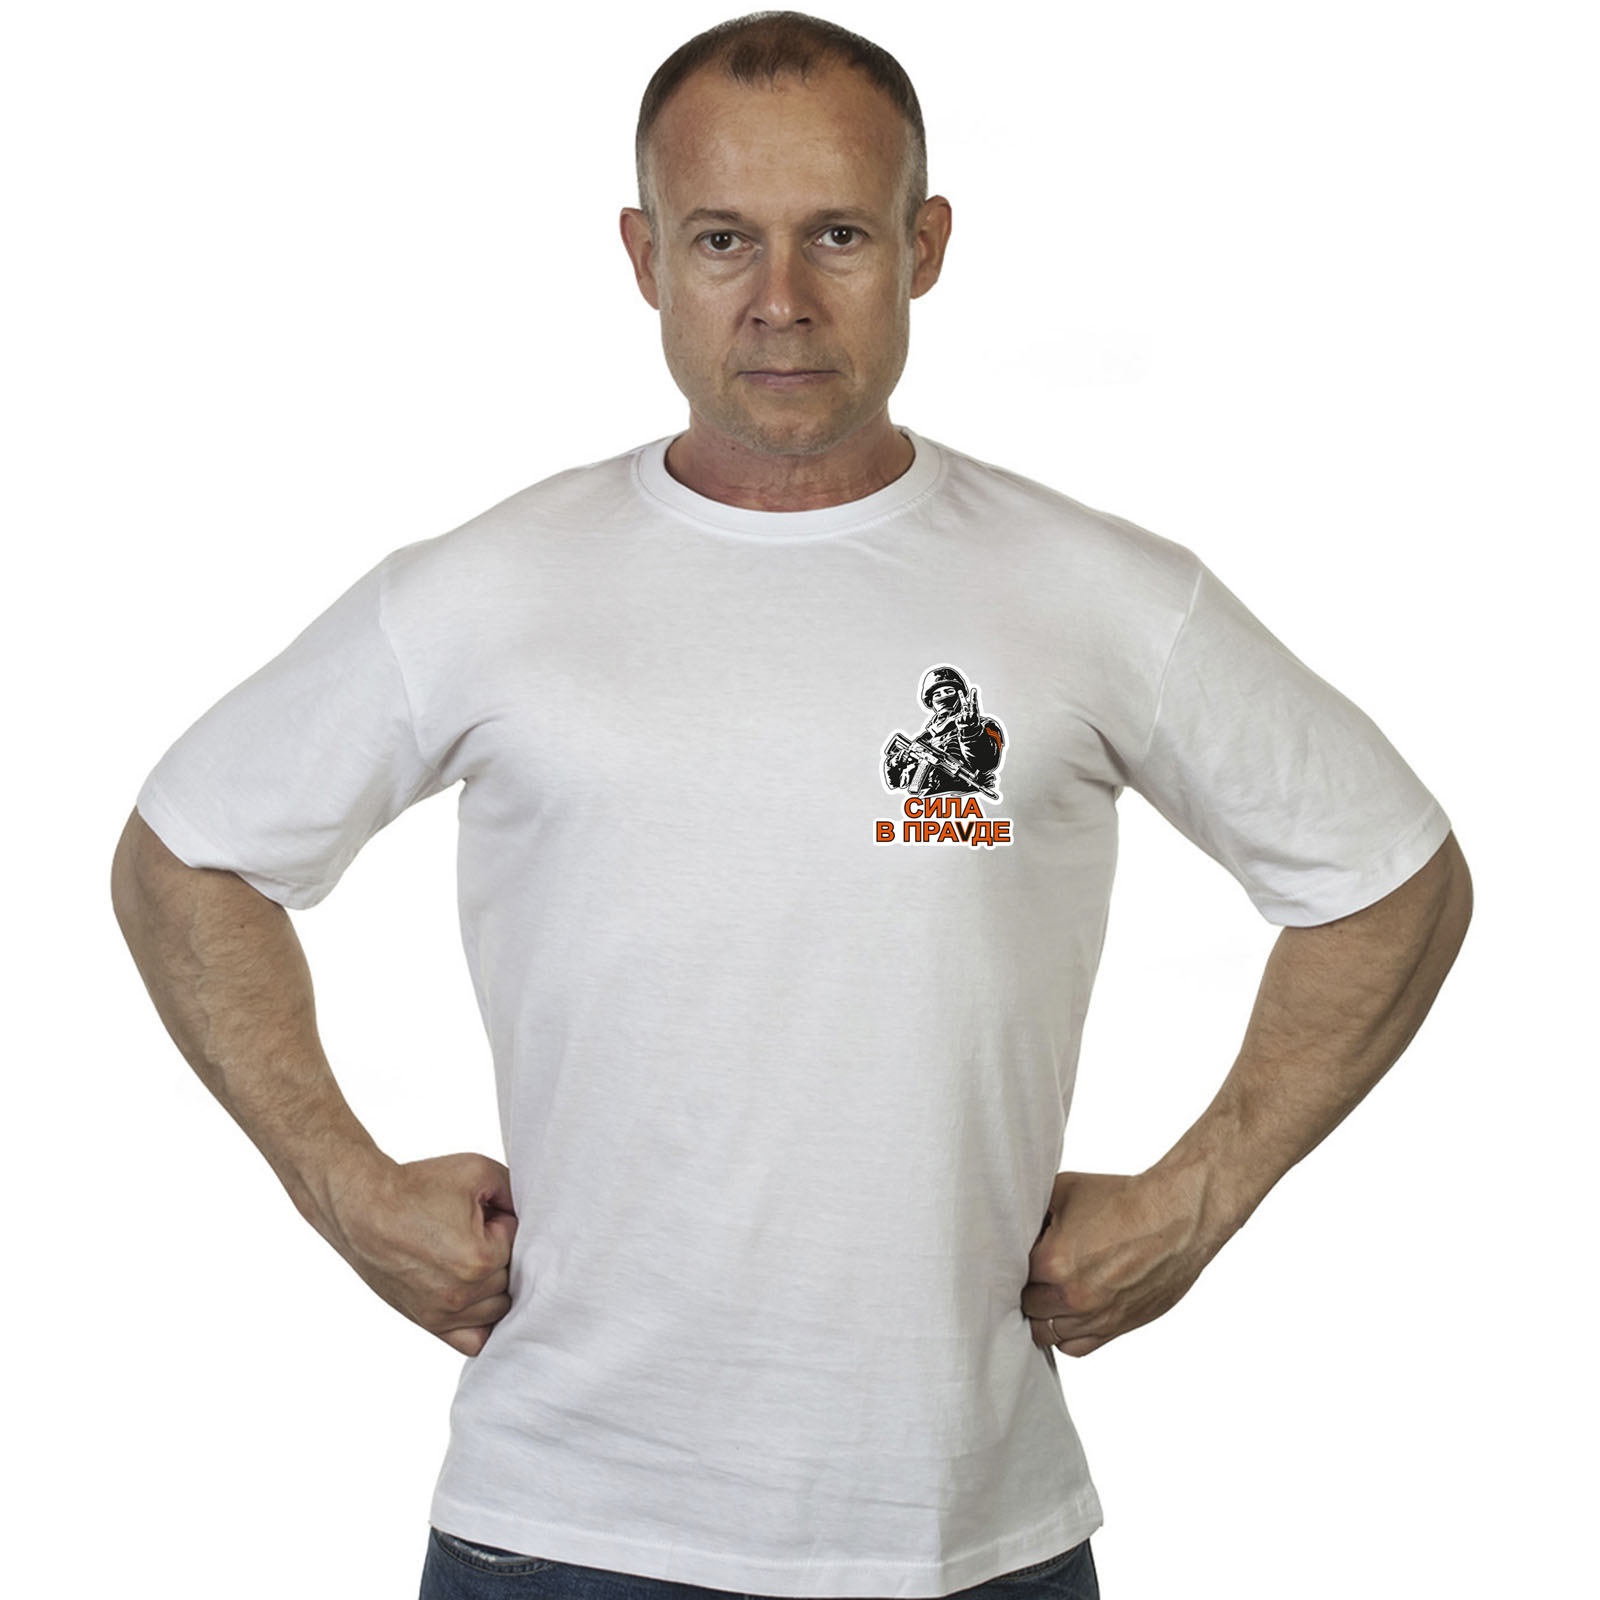 Недорогая мужская футболка с надписью Сила в Правде